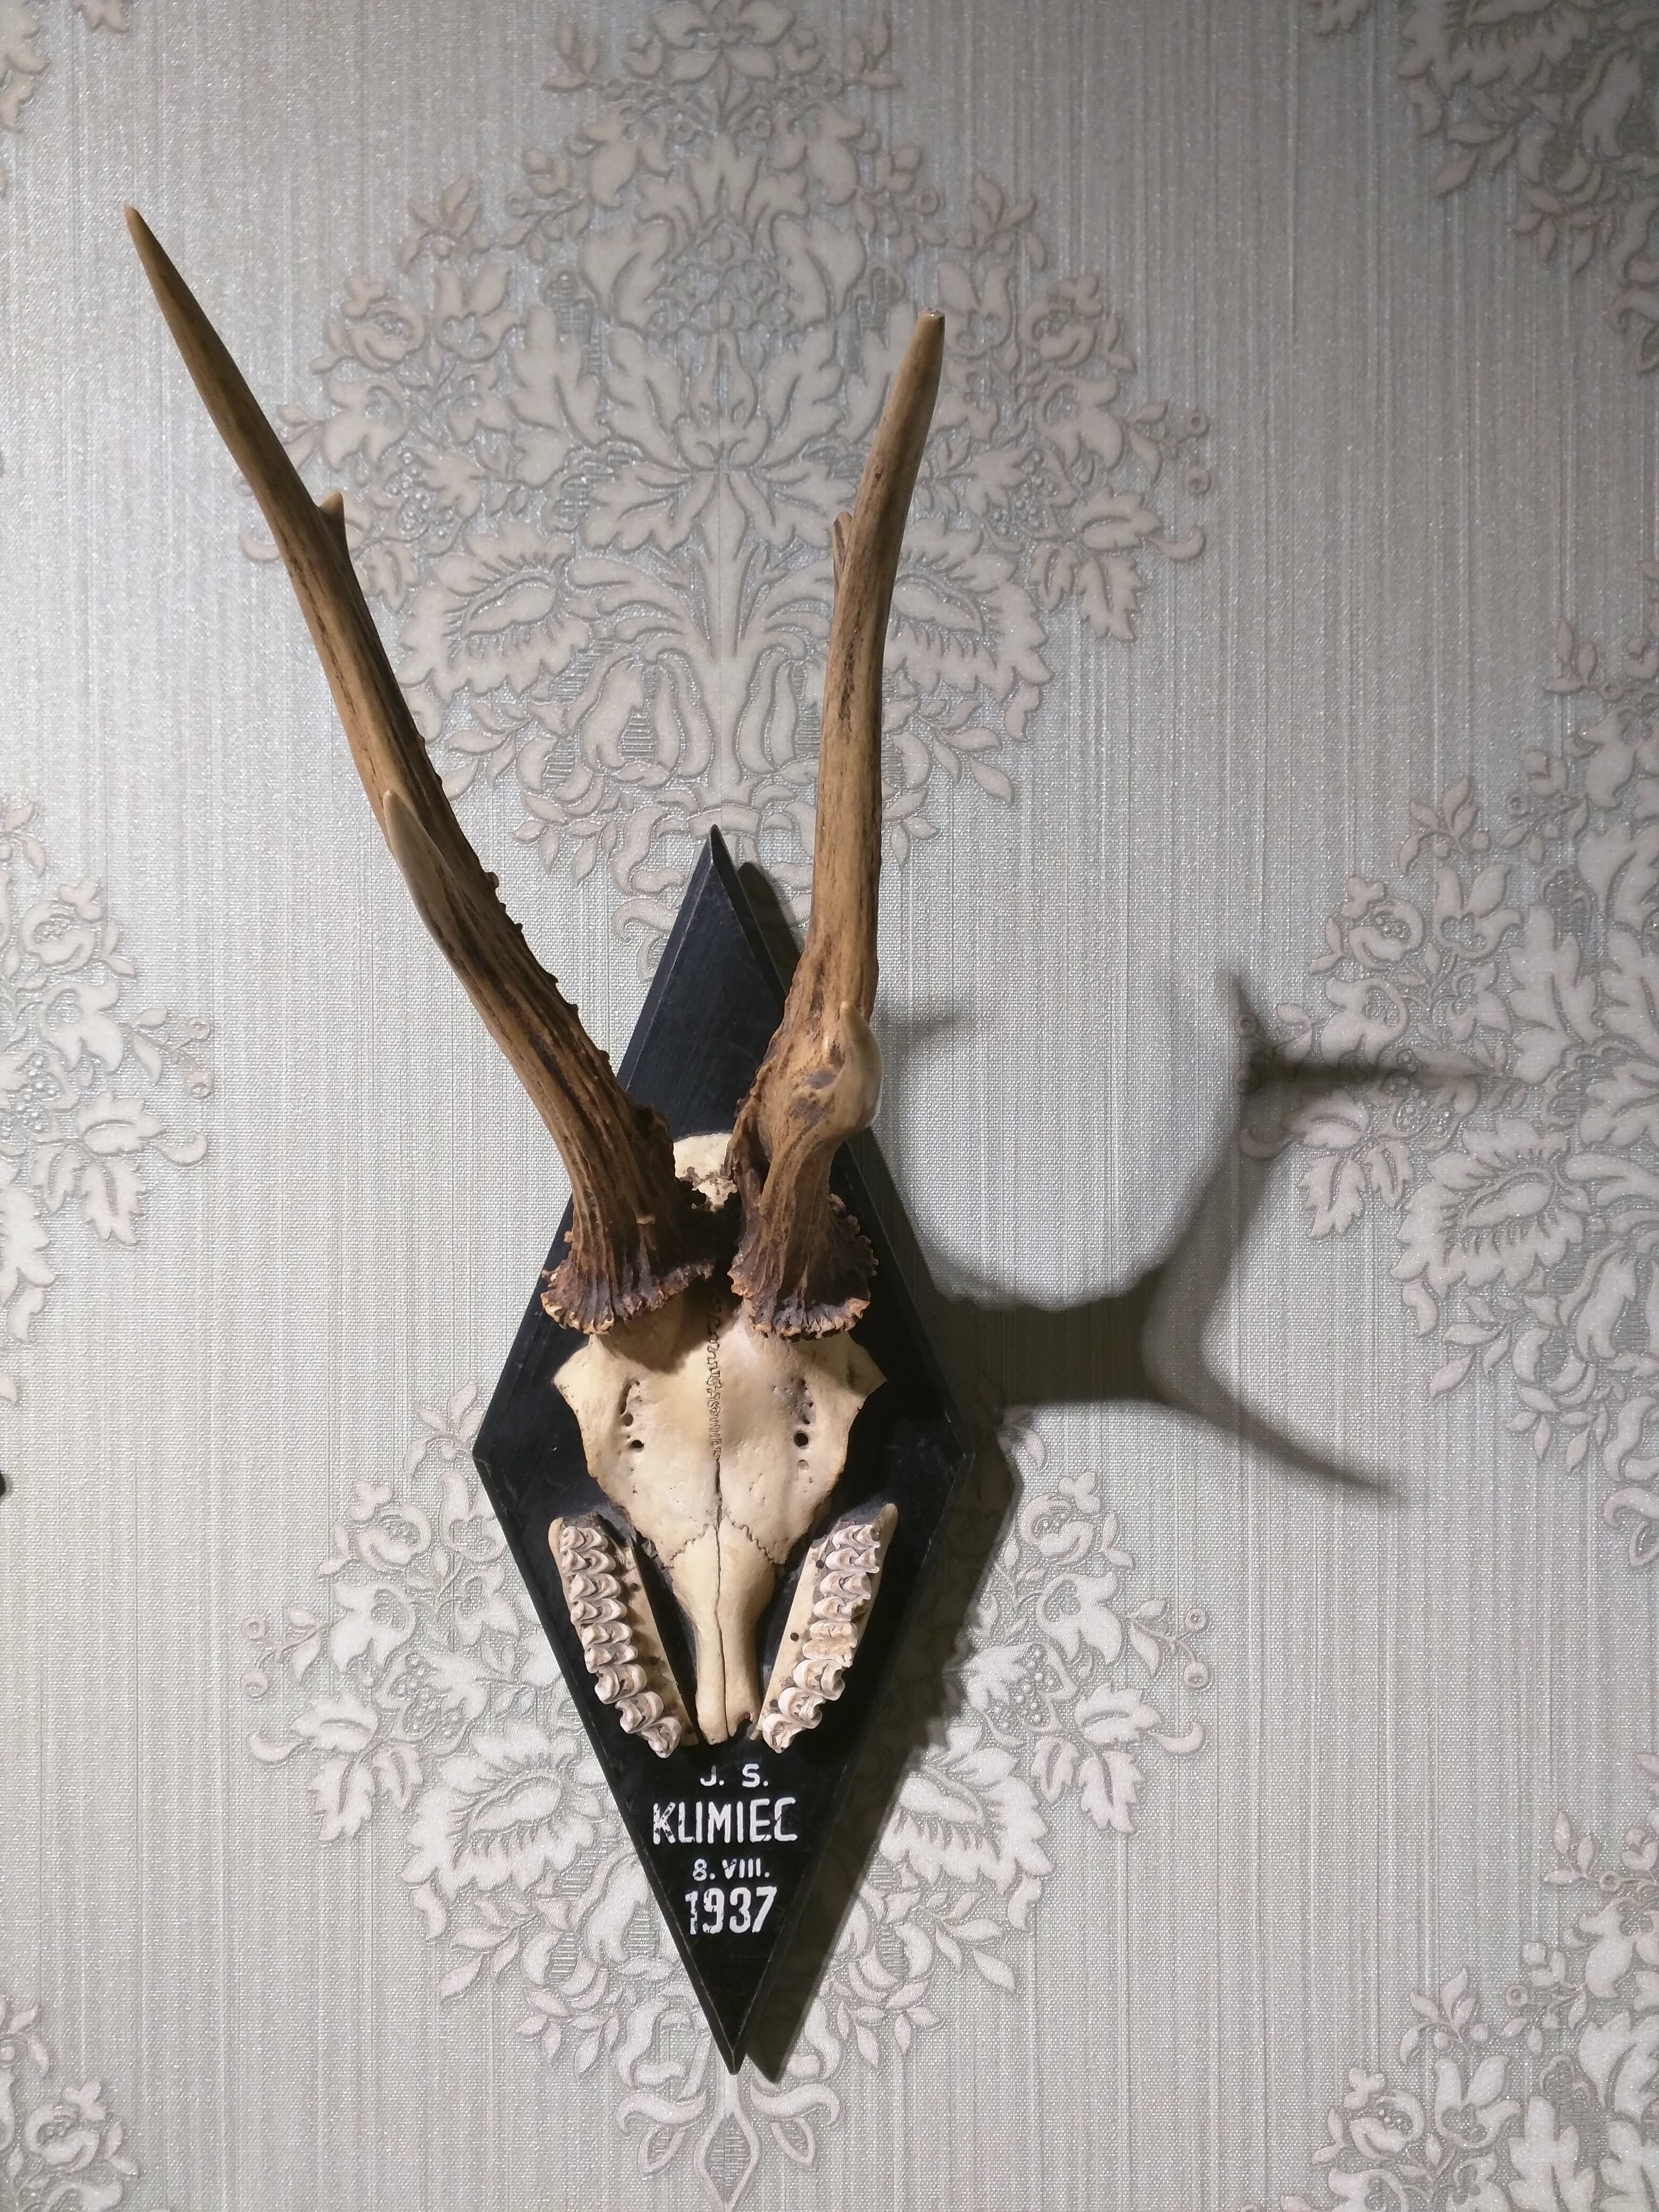 Роги сарни (або дикого козла) з черепом і частинами щелепи. (Меморіальний музей тоталітарних режимів "Територія Терору". CC BY-NC-SA)